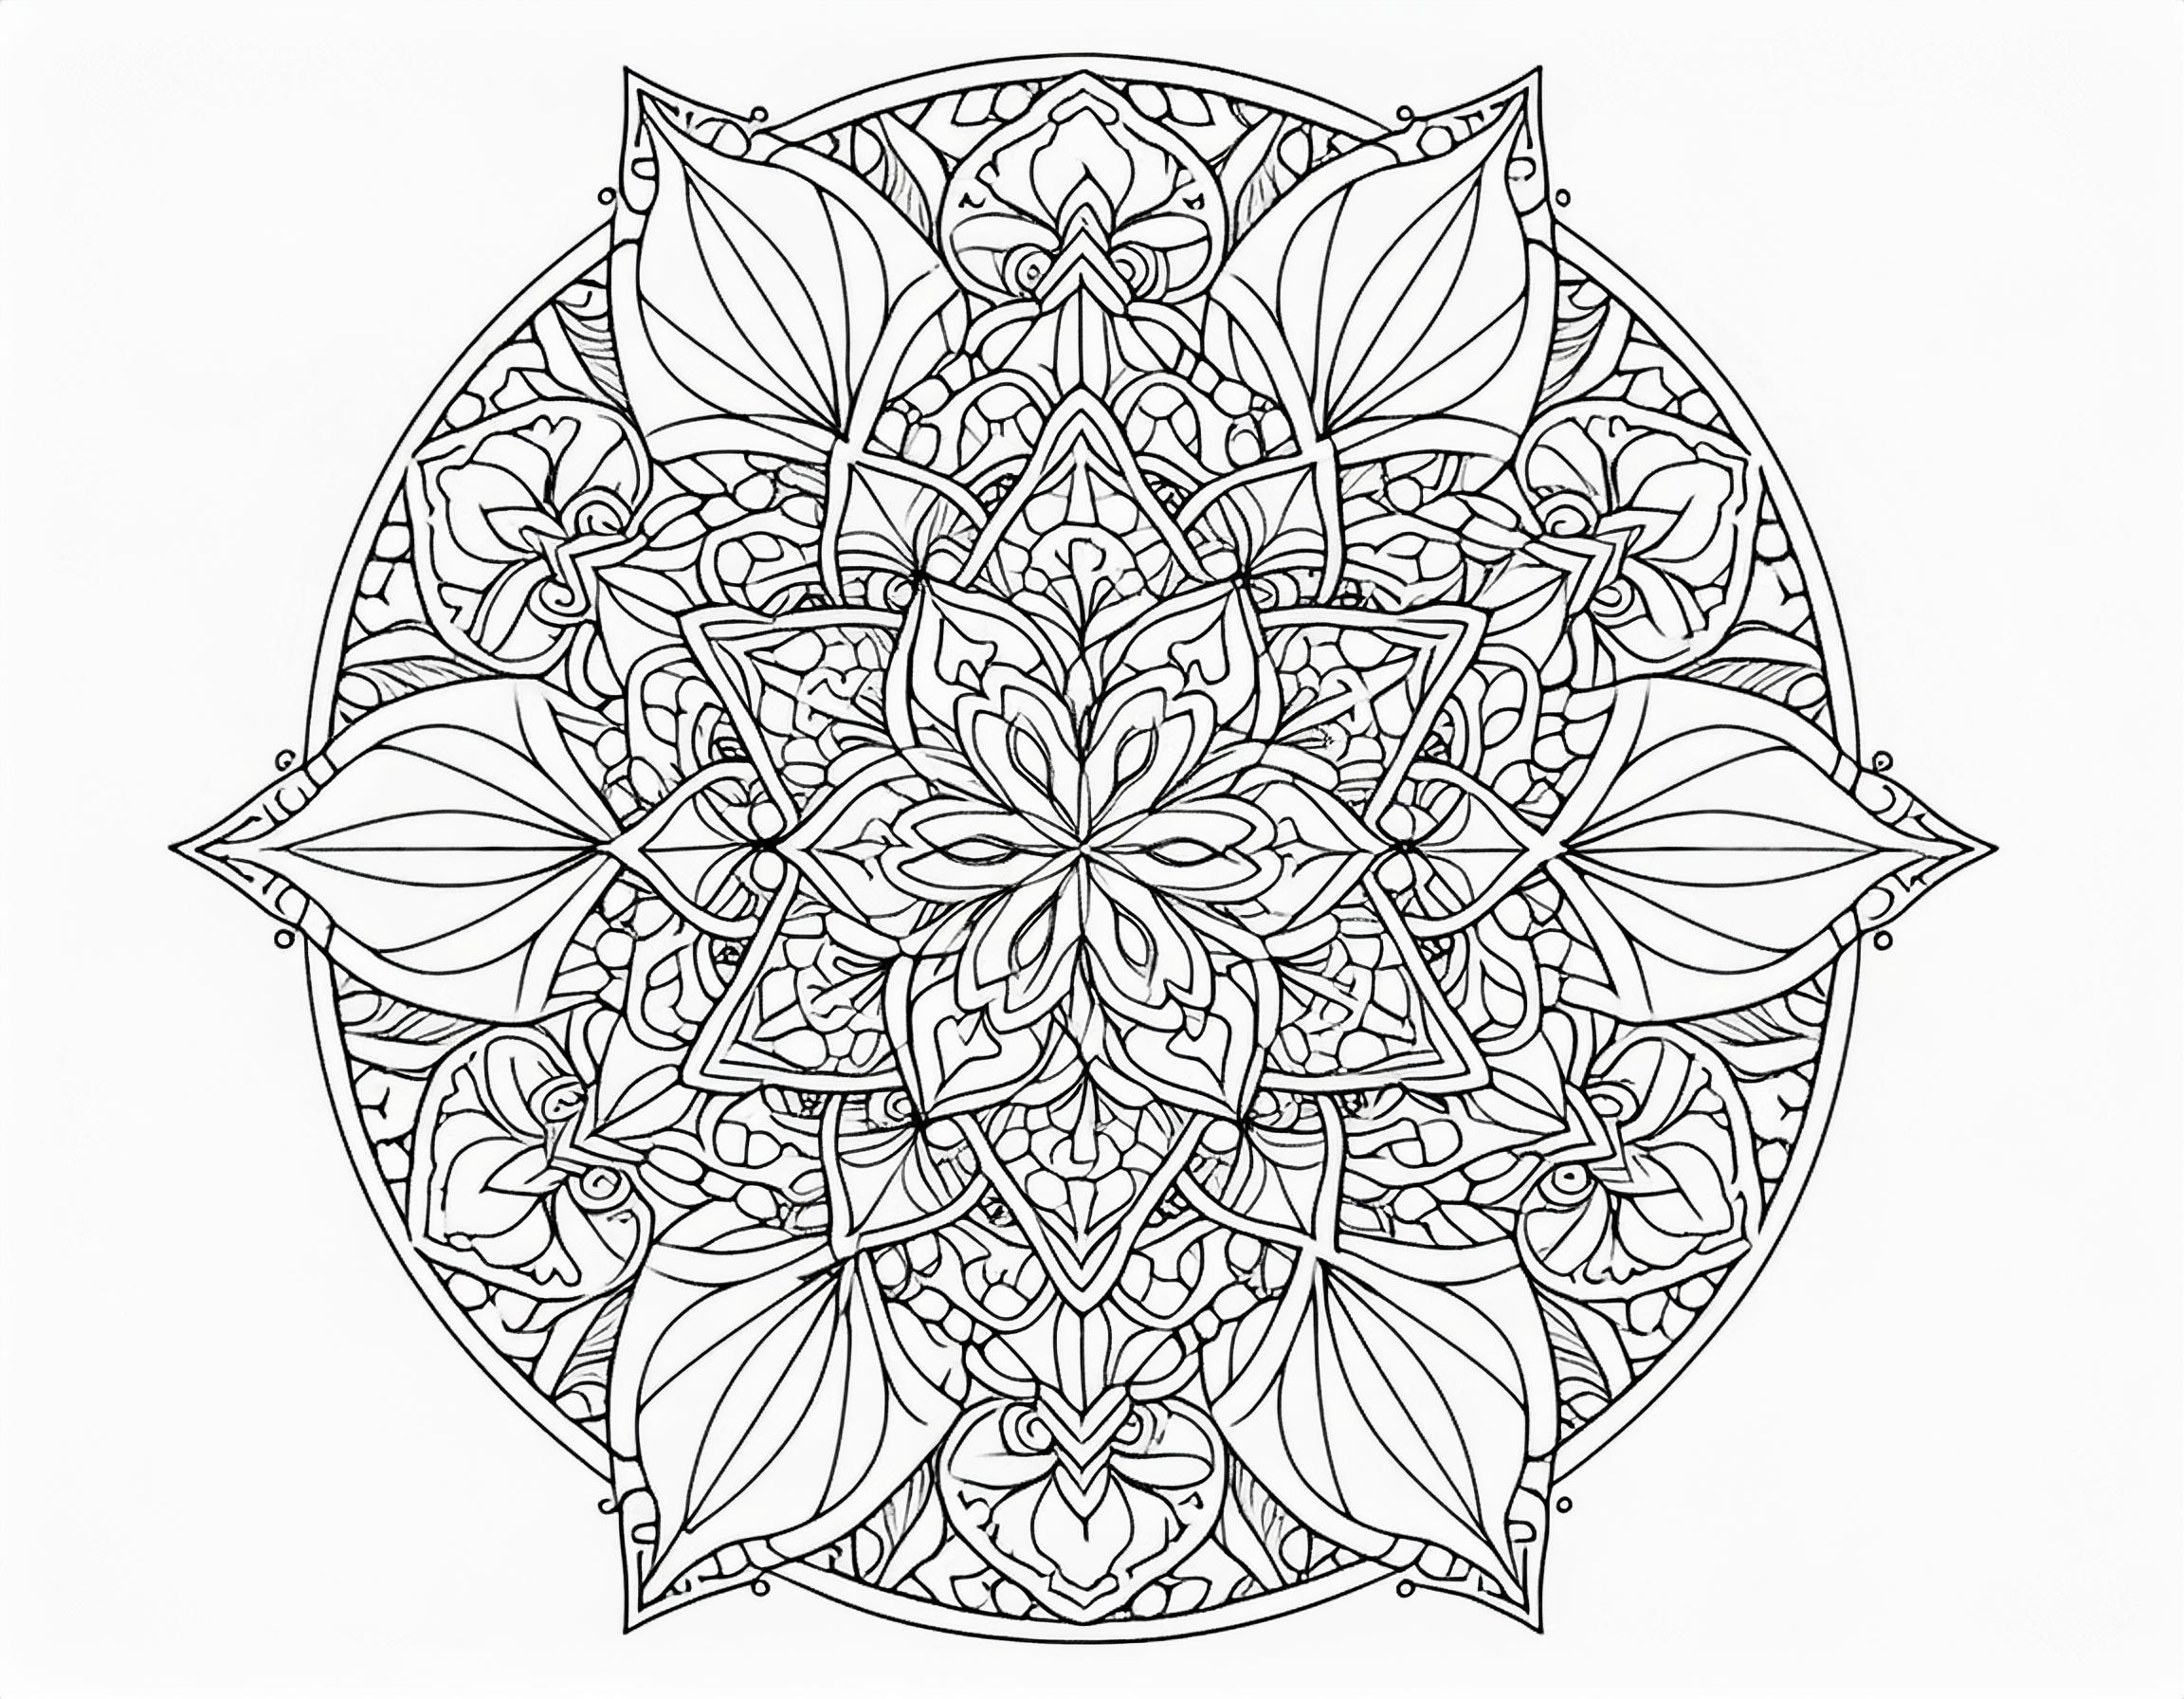 大人のぬりえ 幾何学模様が中心の美しい曼荼羅デザイン011